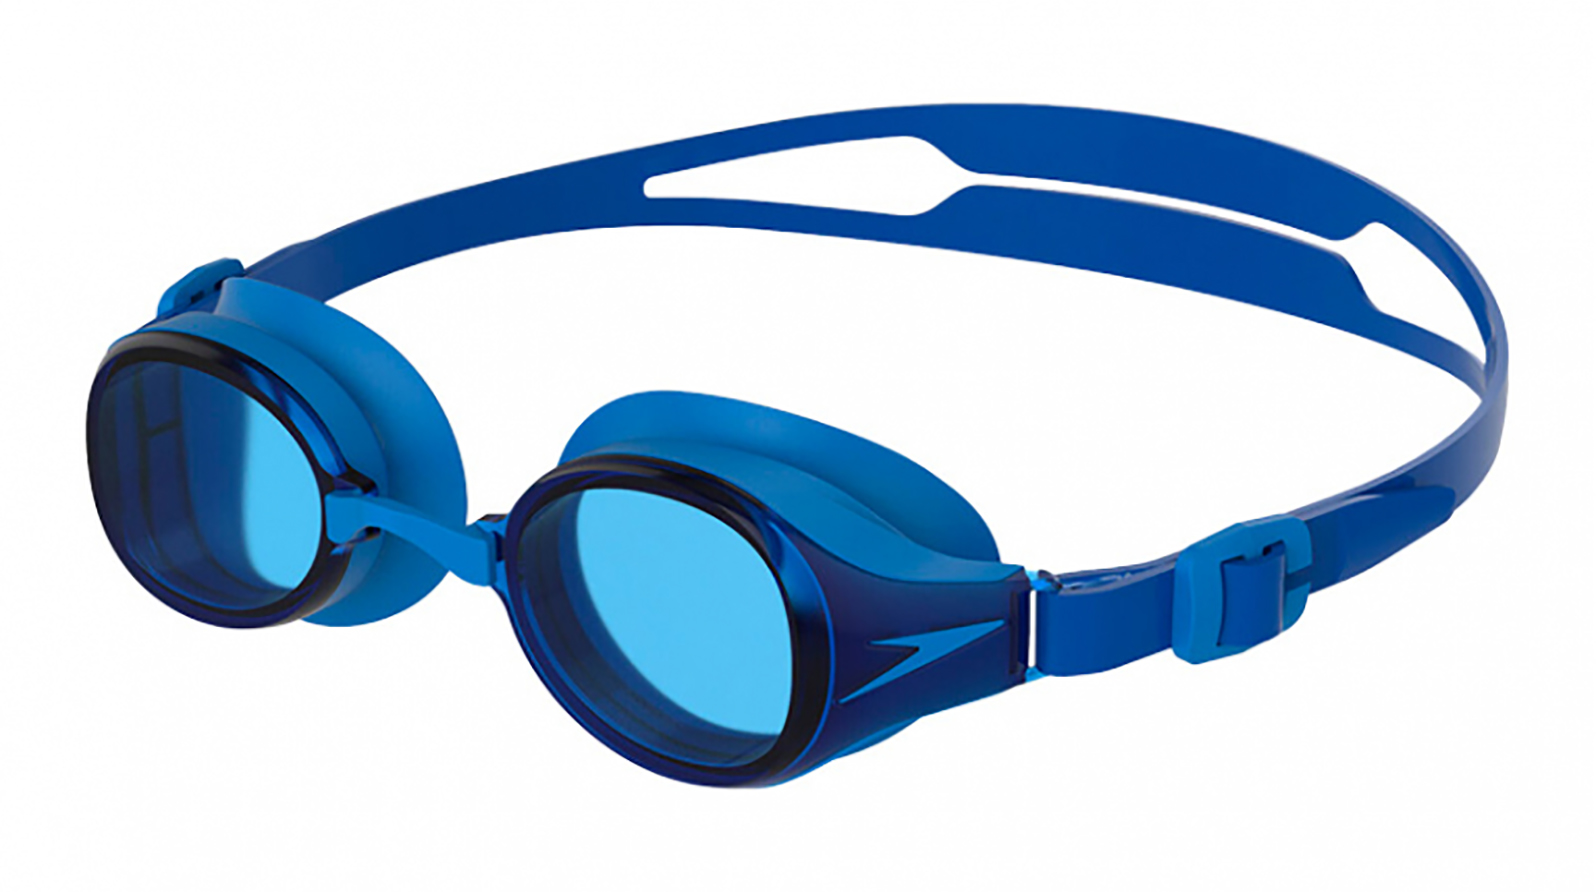 Speedo Очки для плавания Hydropure Optical F809 -4.0 grand voyage насадка на очки для водителя с желтыми линзами 01c1